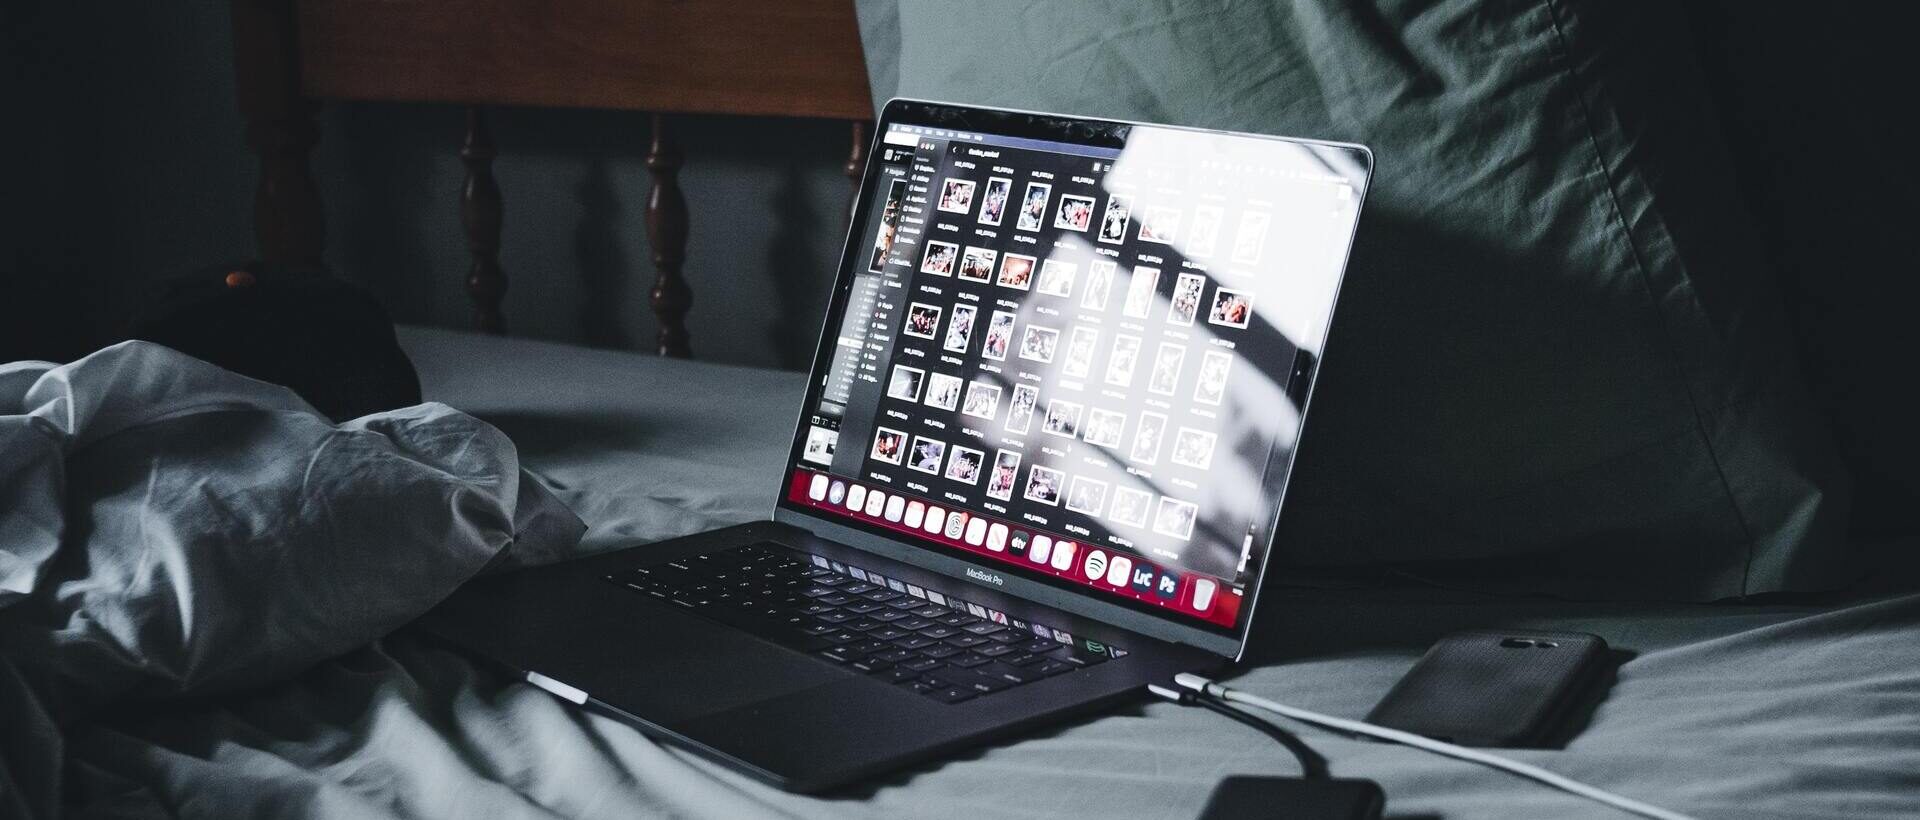 Ein aufgeklappter Laptop auf dem Bett mit einem geöffneten Bildprogramm